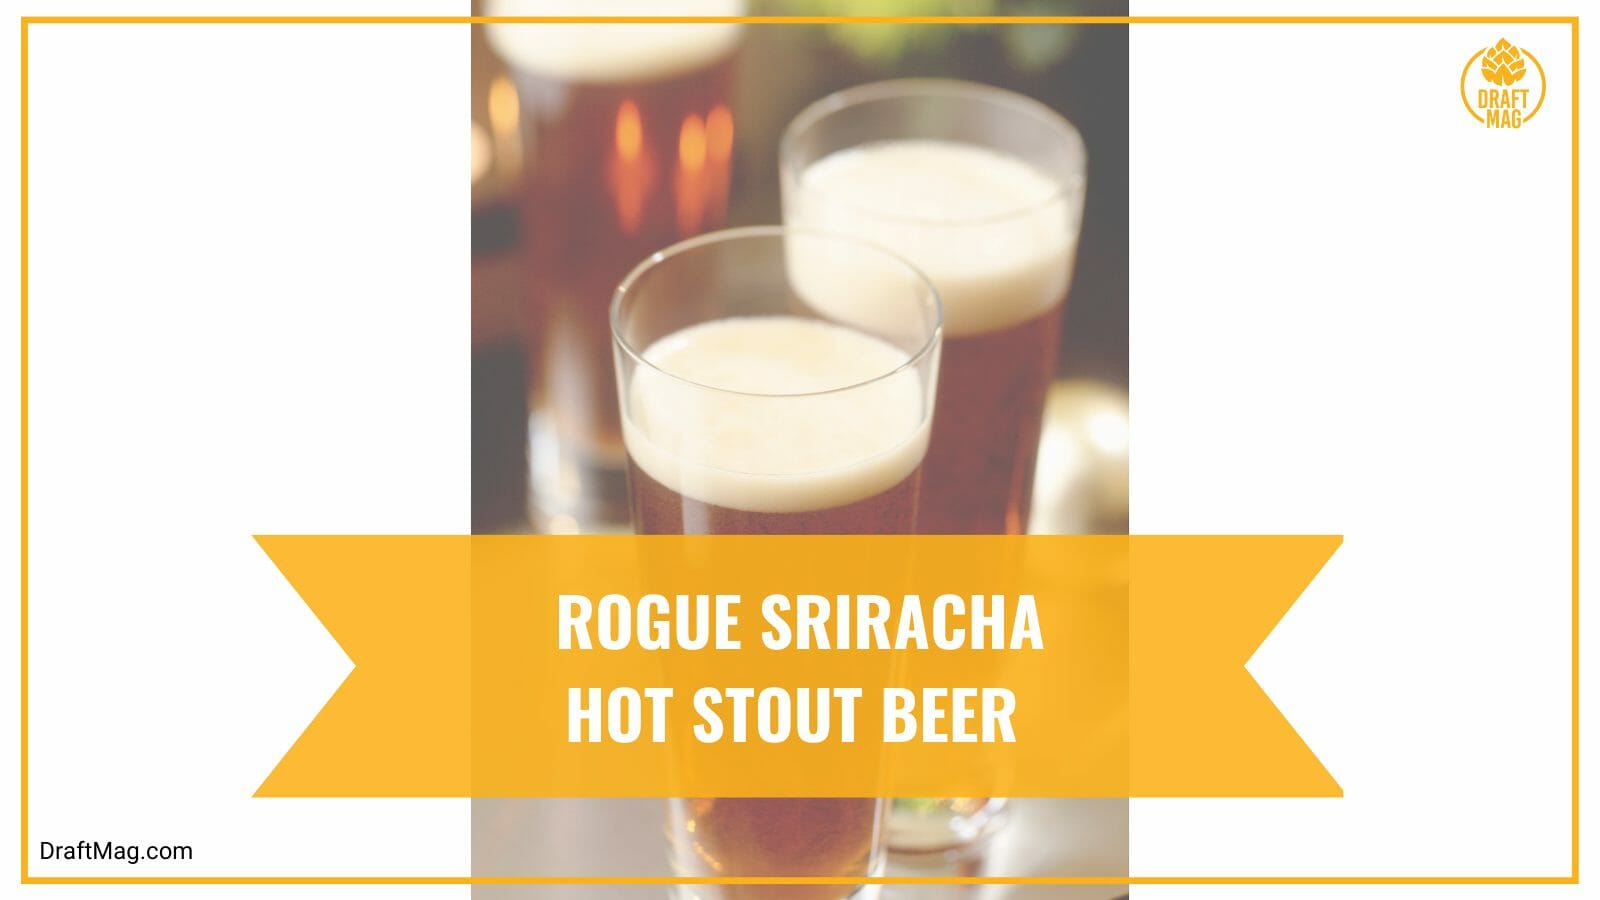 Rogue sriracha hot stout beer